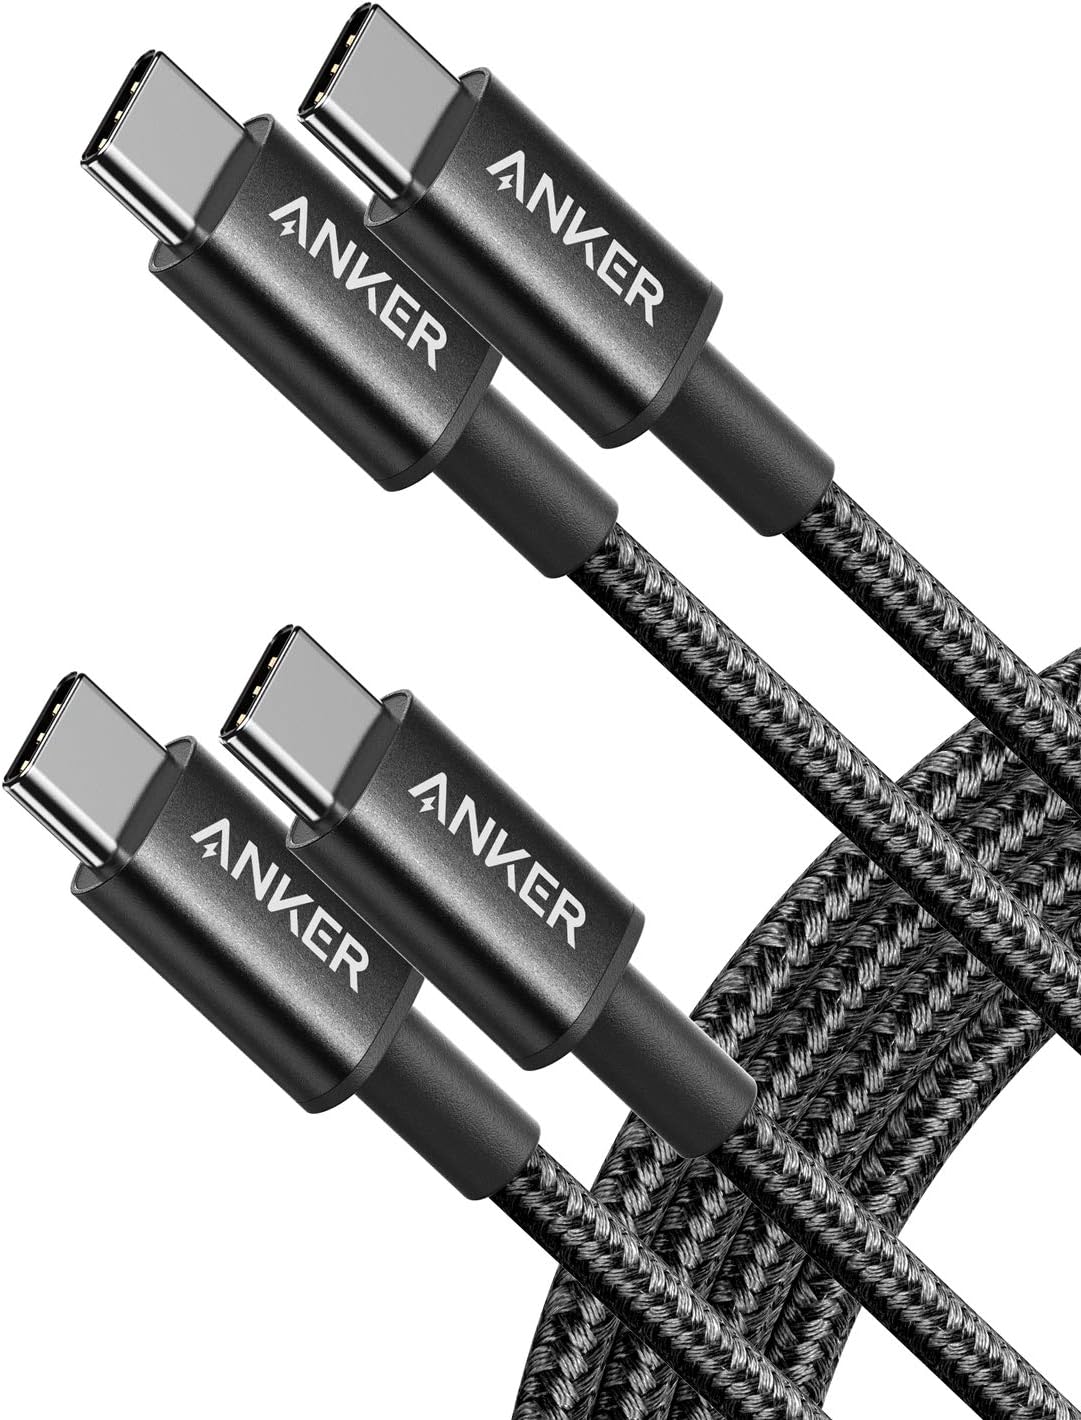 Anker New Nylon Series 3 USB-C naar USB-C 2-pack